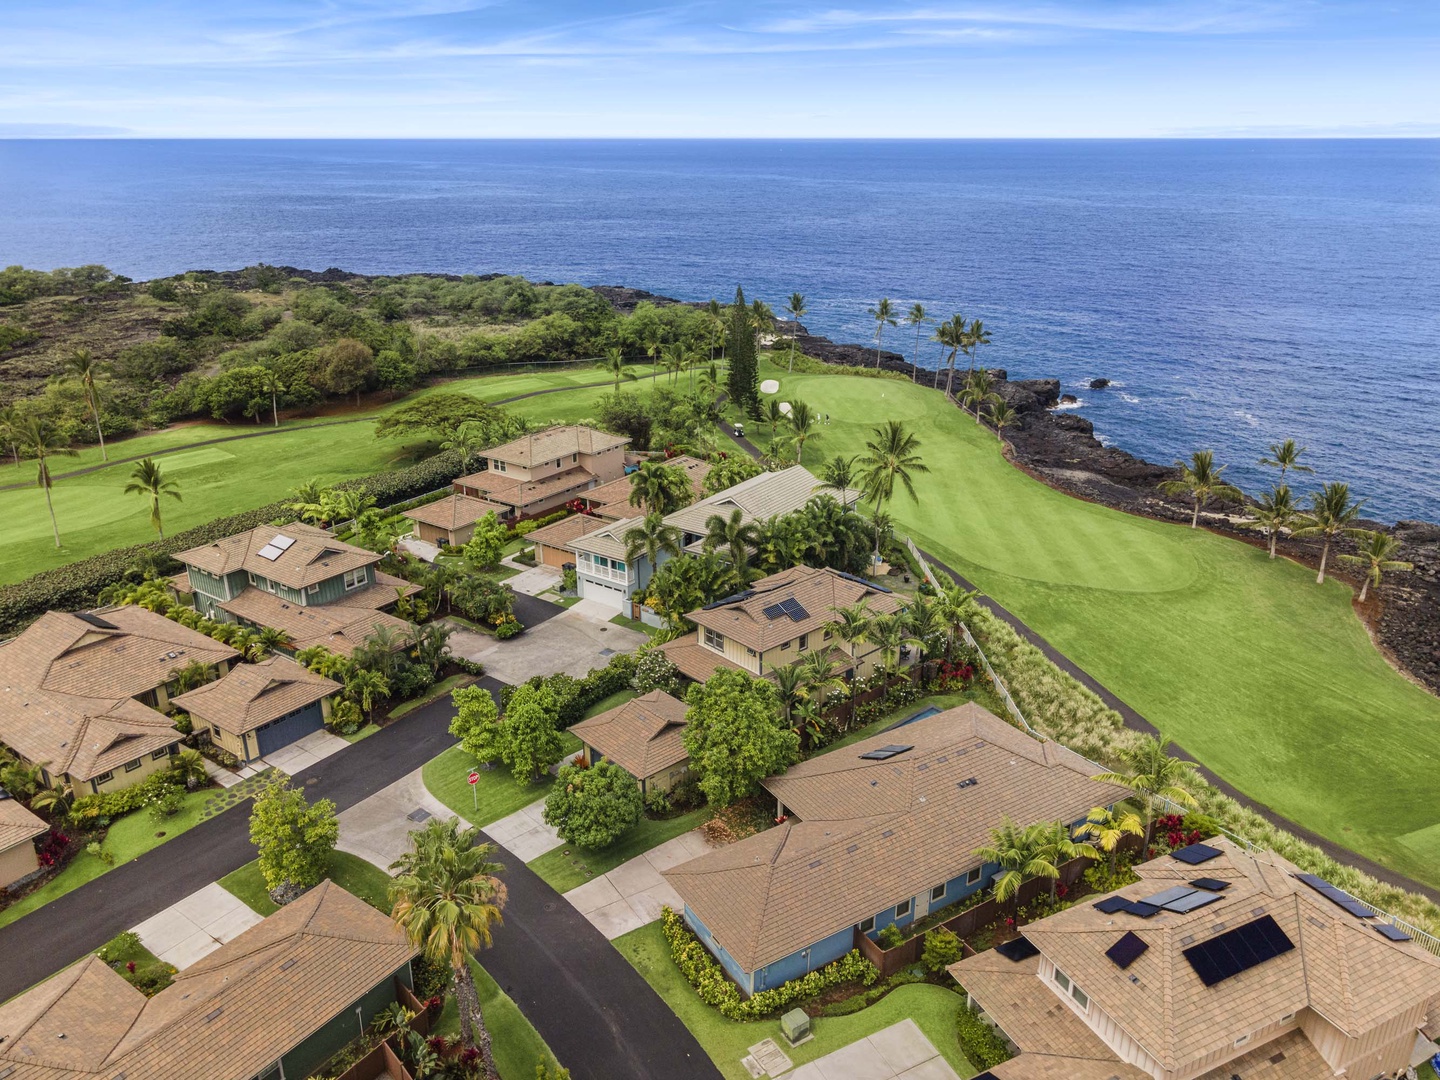 Kailua Kona Vacation Rentals, Holua Kai #20 - Aerials of the home and surrounding neighborhood